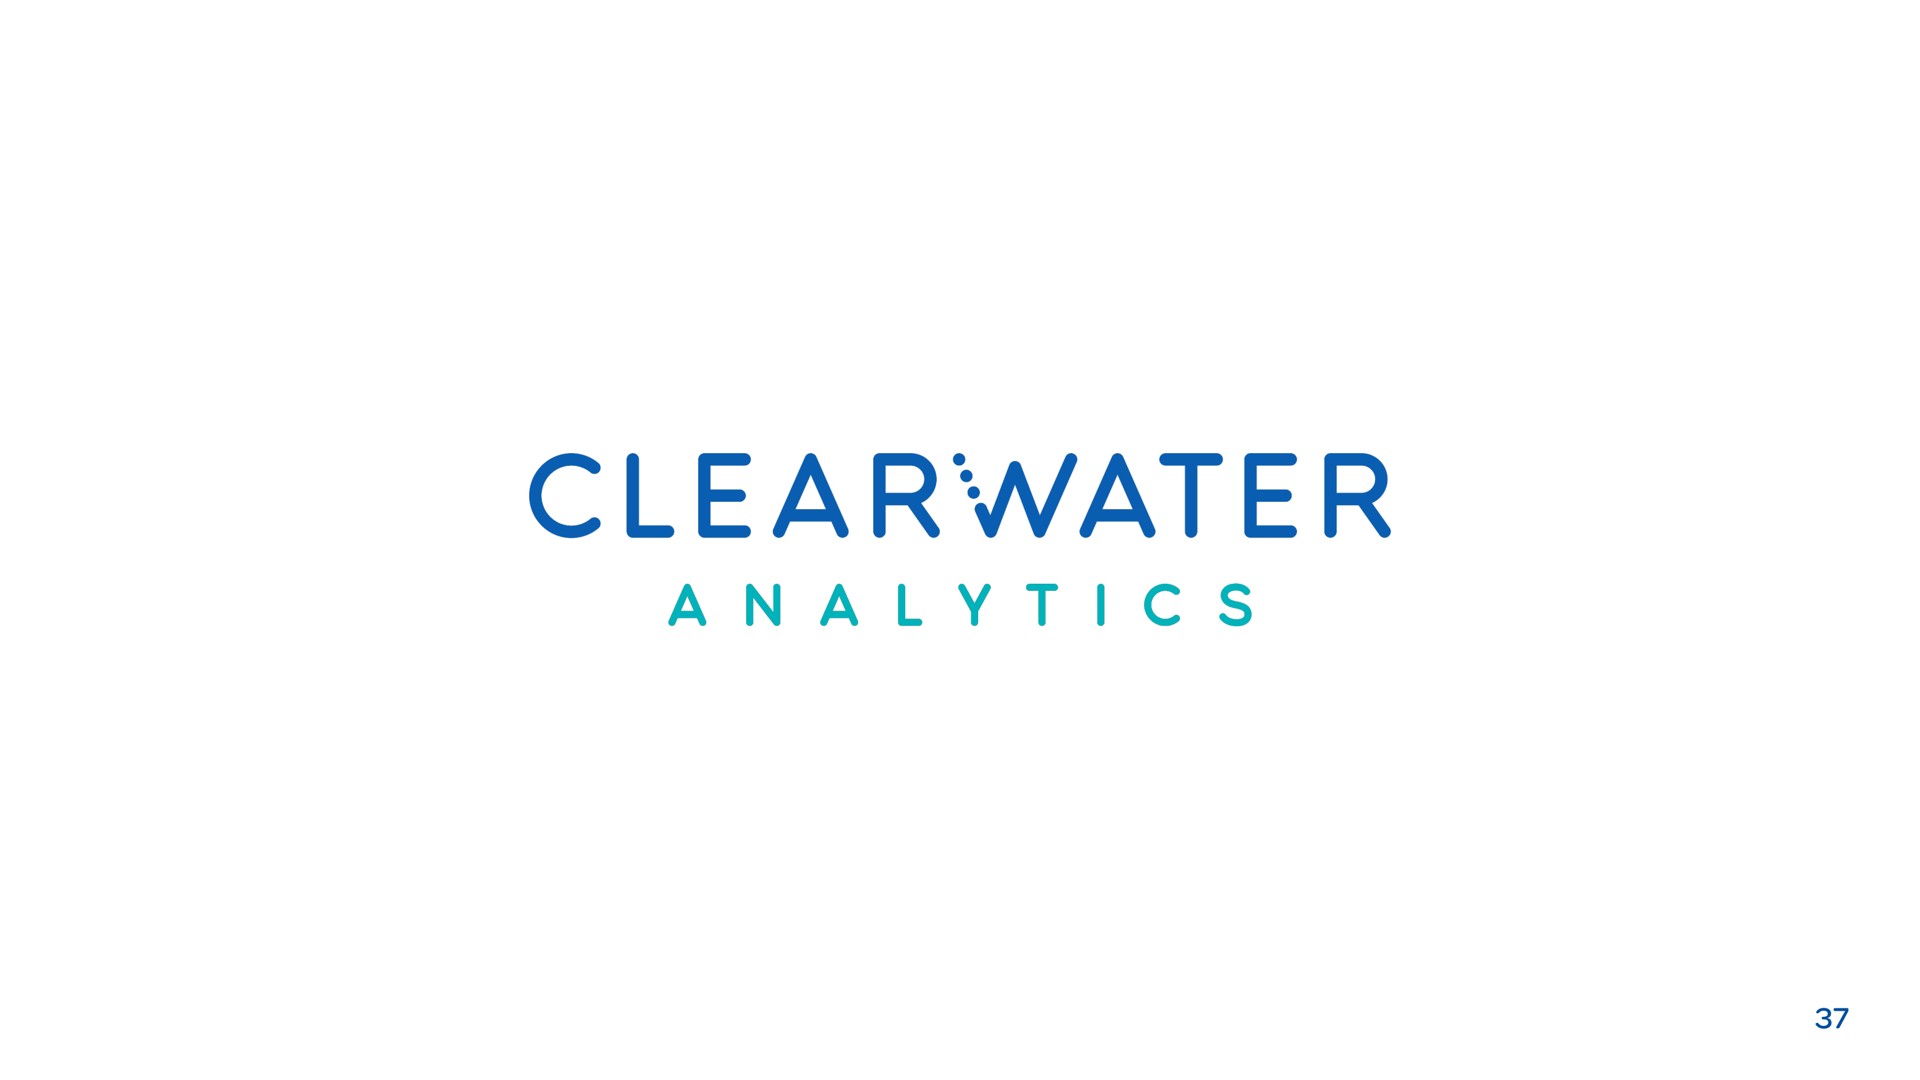 analytics | Clearwater Analytics